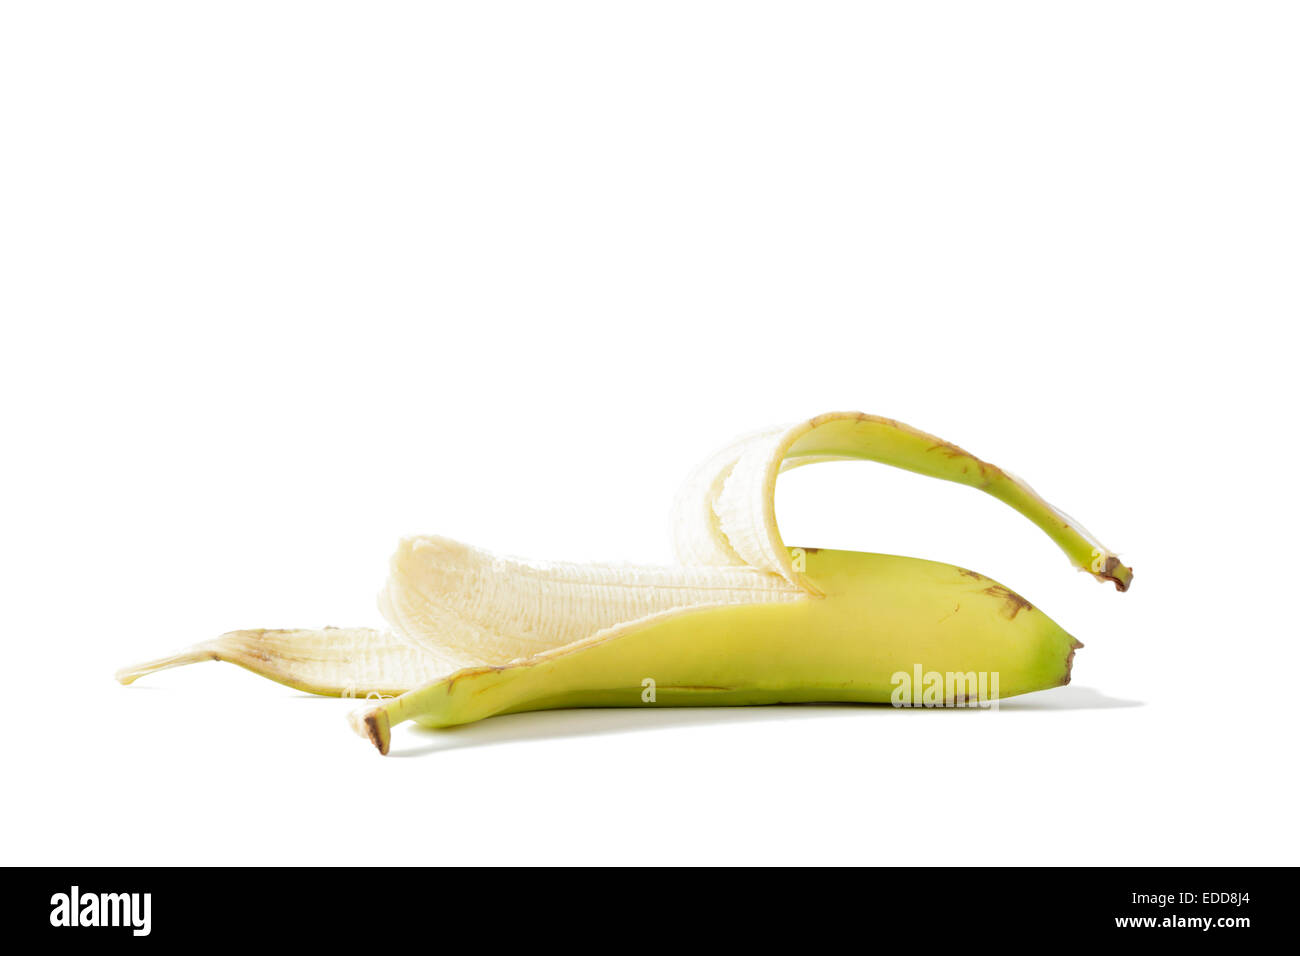 Peeled banana Stock Photo